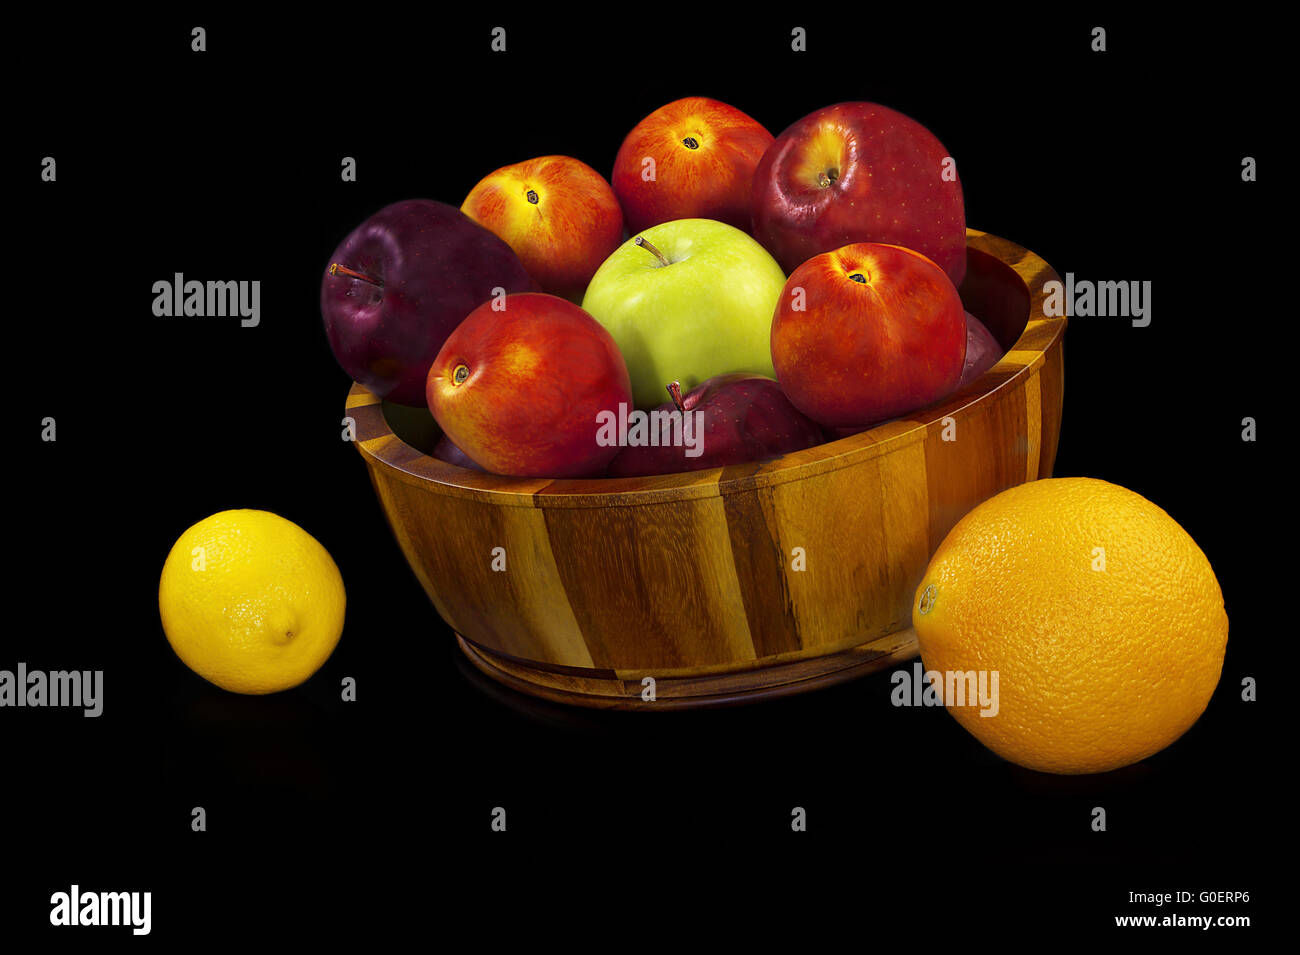 Fruits Isolated on black background. Stock Photo